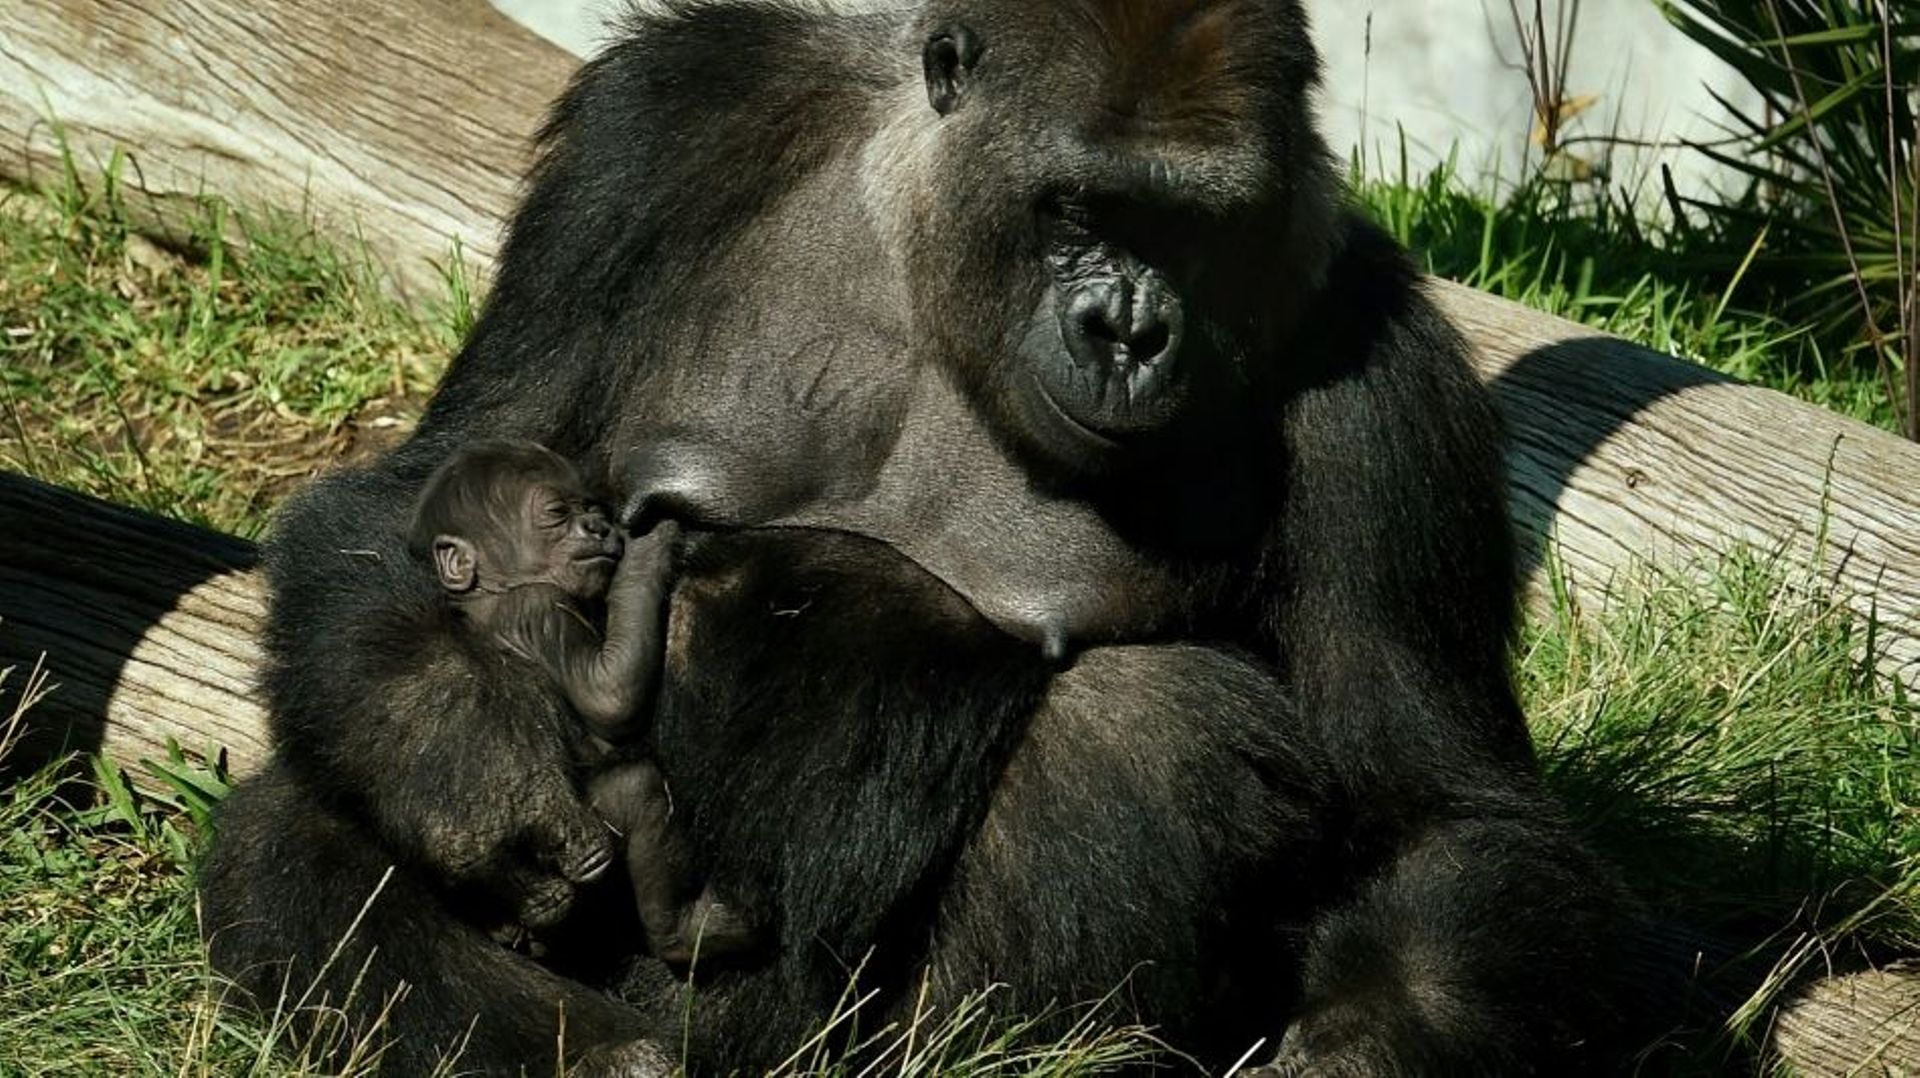 Une femelle gorille nommée Jessica et son bébé, alors âgé de deux semaines, dans leur enclos du zoo de San Diego, dans le sud de la Californie, le 13 janvier 2015